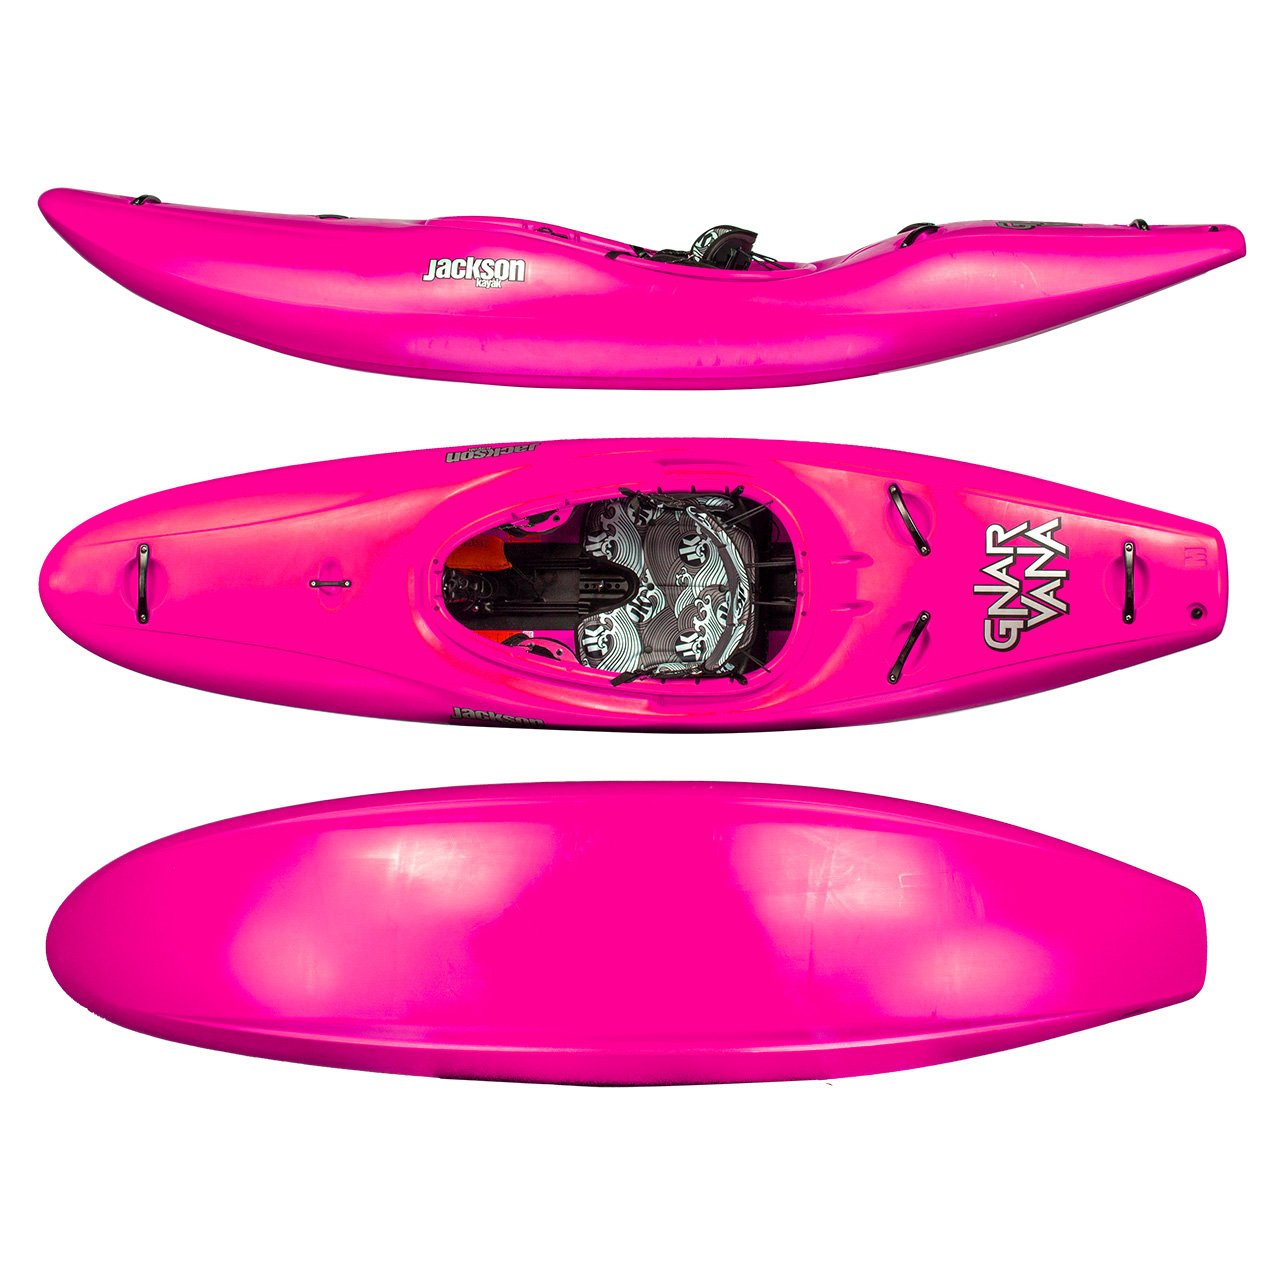 New JK Gnarvana kayak in GOAT colorway